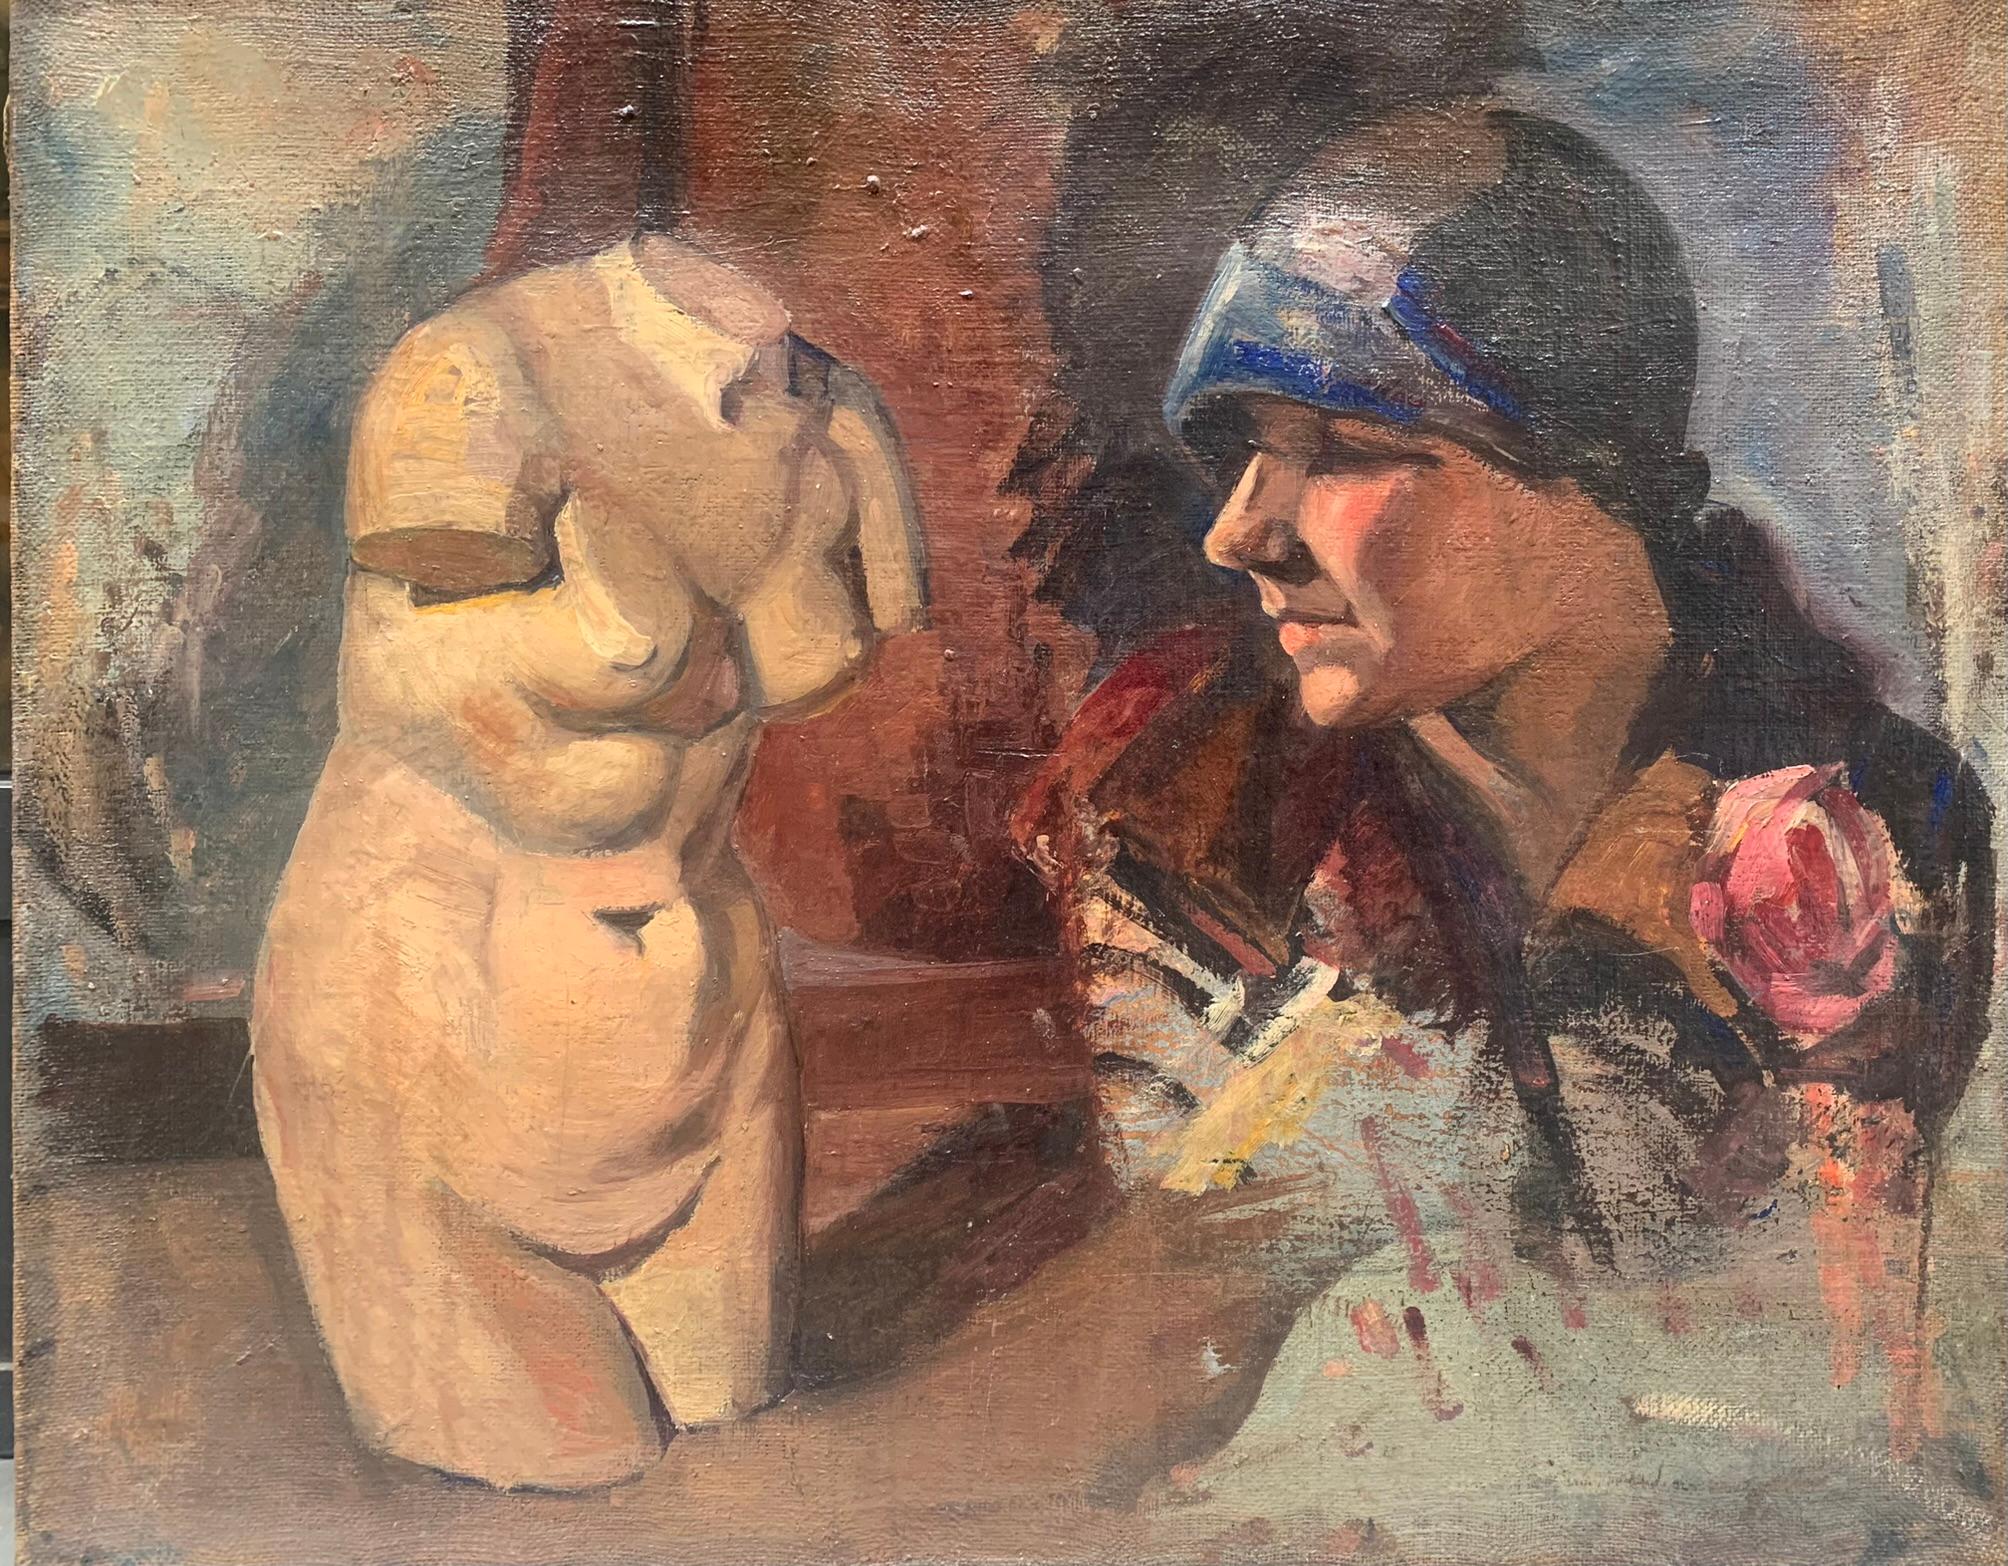 Unknown Portrait Painting – Weiblicher Torso und Porträt aus den 1920er Jahren. Doppelte Skizze auf Leinwand.